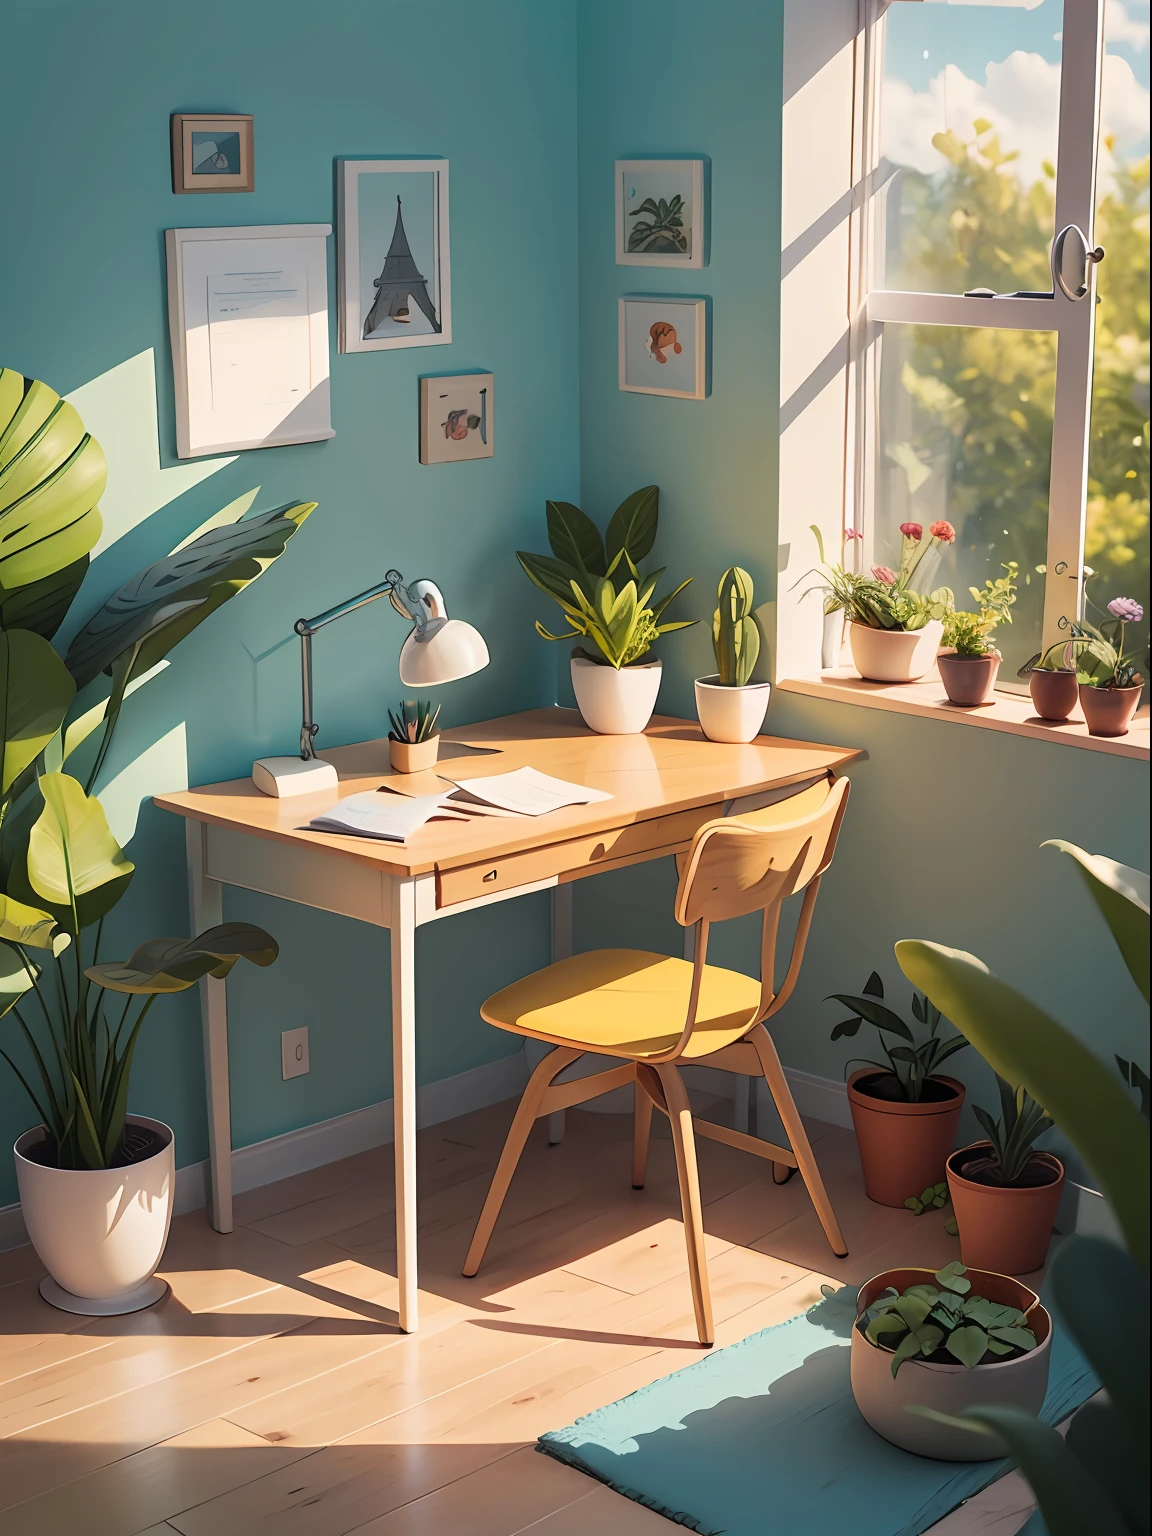 Иллюстрация письменного стола, нарисованная в мультяшном стиле. Добавьте природные элементы, Как растения и цветы, И используйте мягкую цветовую палитру, чтобы создать расслабляющую атмосферу..